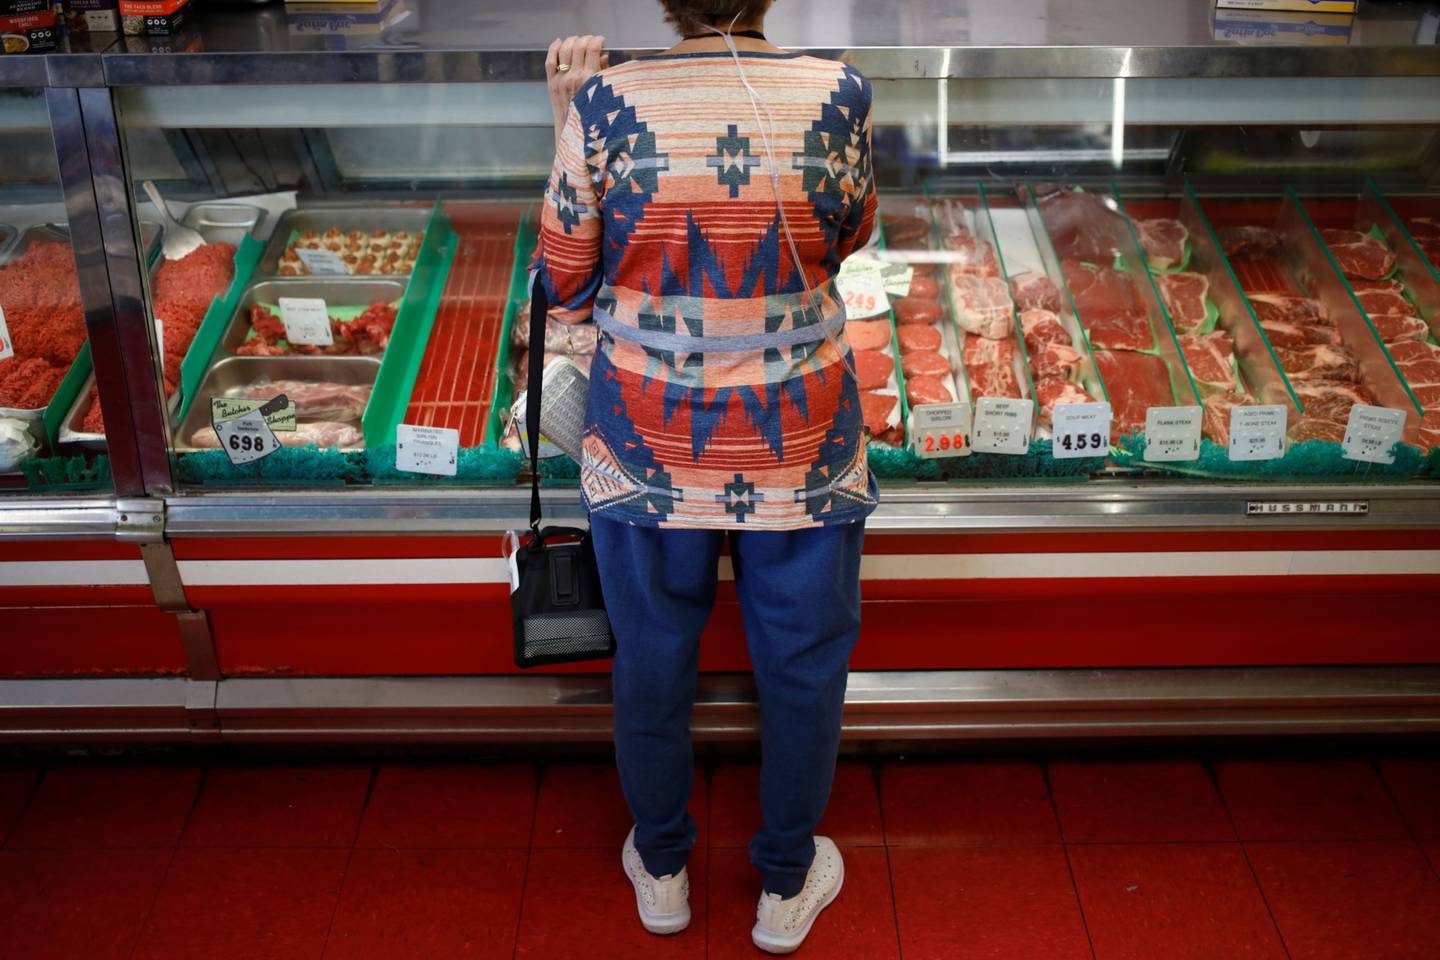 Un cliente pide comida en una carnicería de Louisville, Kentucky, Estados Unidos, el martes 23 de agosto de 2022. En 2022, se espera que el aumento de los precios de los alimentos sea superior al de 2020 y 2021, según el informe "Perspectivas de los precios de los alimentos" del Departamento de Agricultura de EE.UU. Foto: Luke Sharrett/Bloomberg.